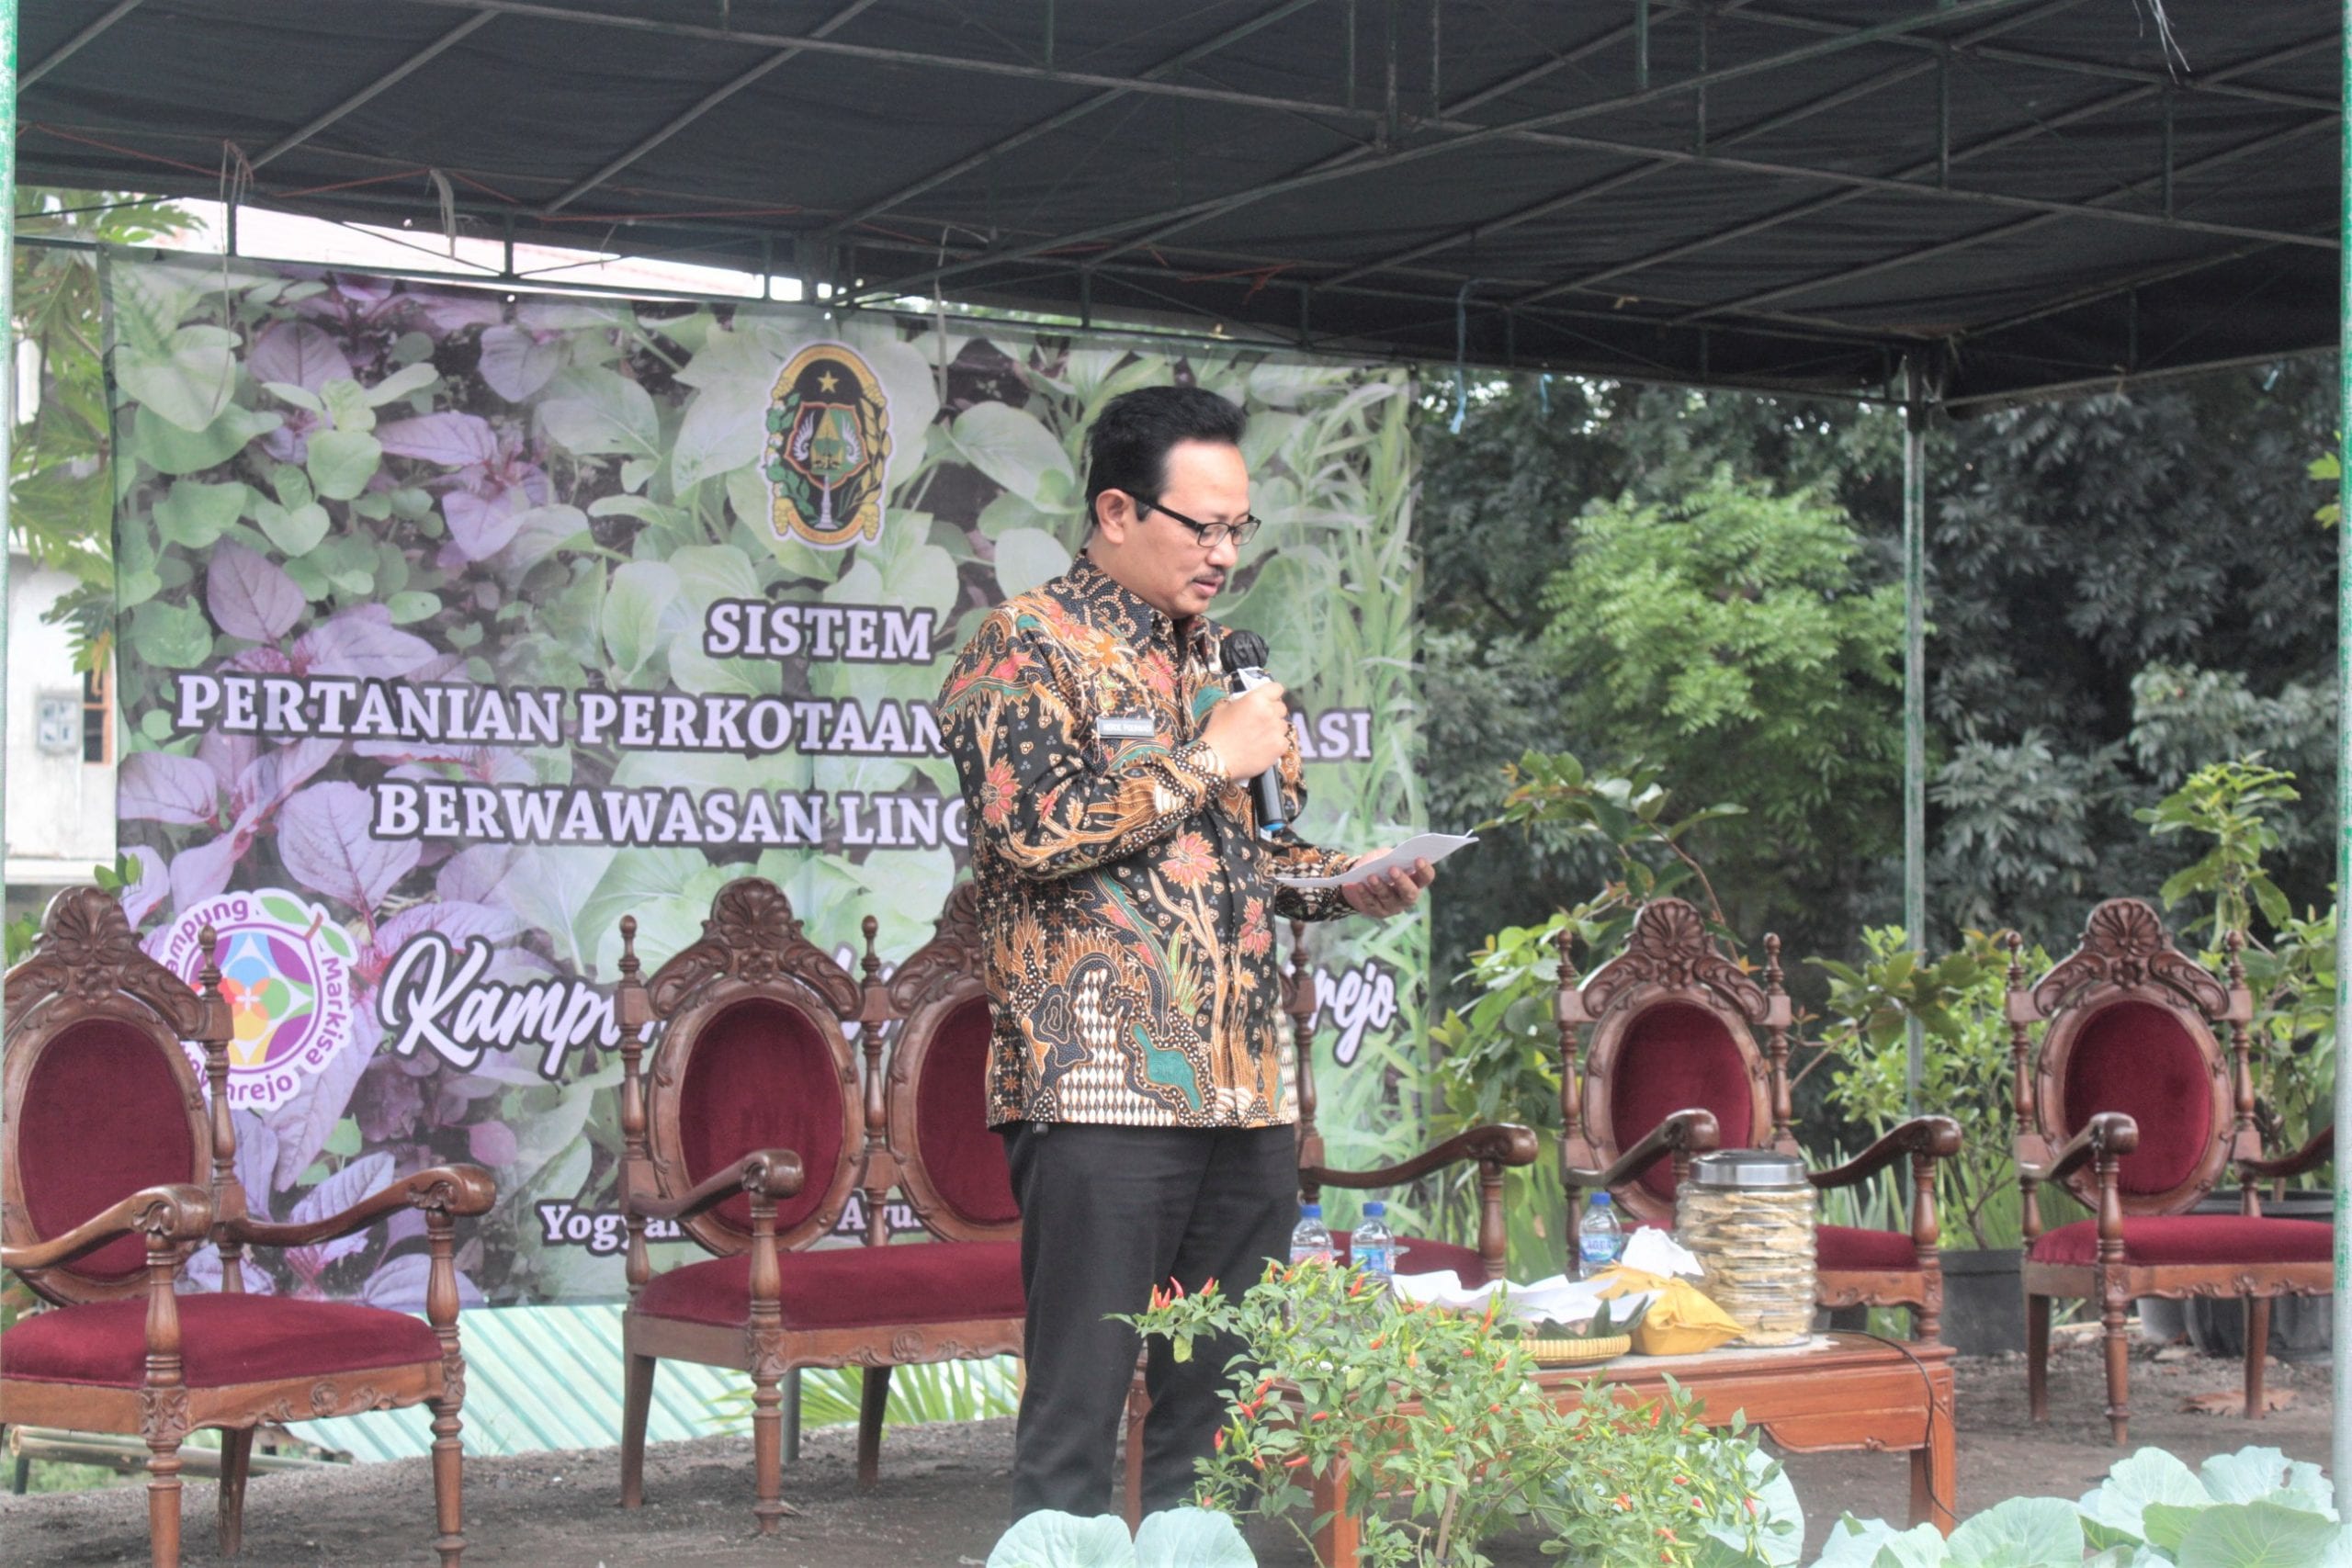 Wakil Walikota Yogyakarta, Drs. Heroe Poerwadi, MA sedang memberikan sambutan pada "Launching Sistem Pertanian Perkotaan Terintegrasi di Yogyakarta"